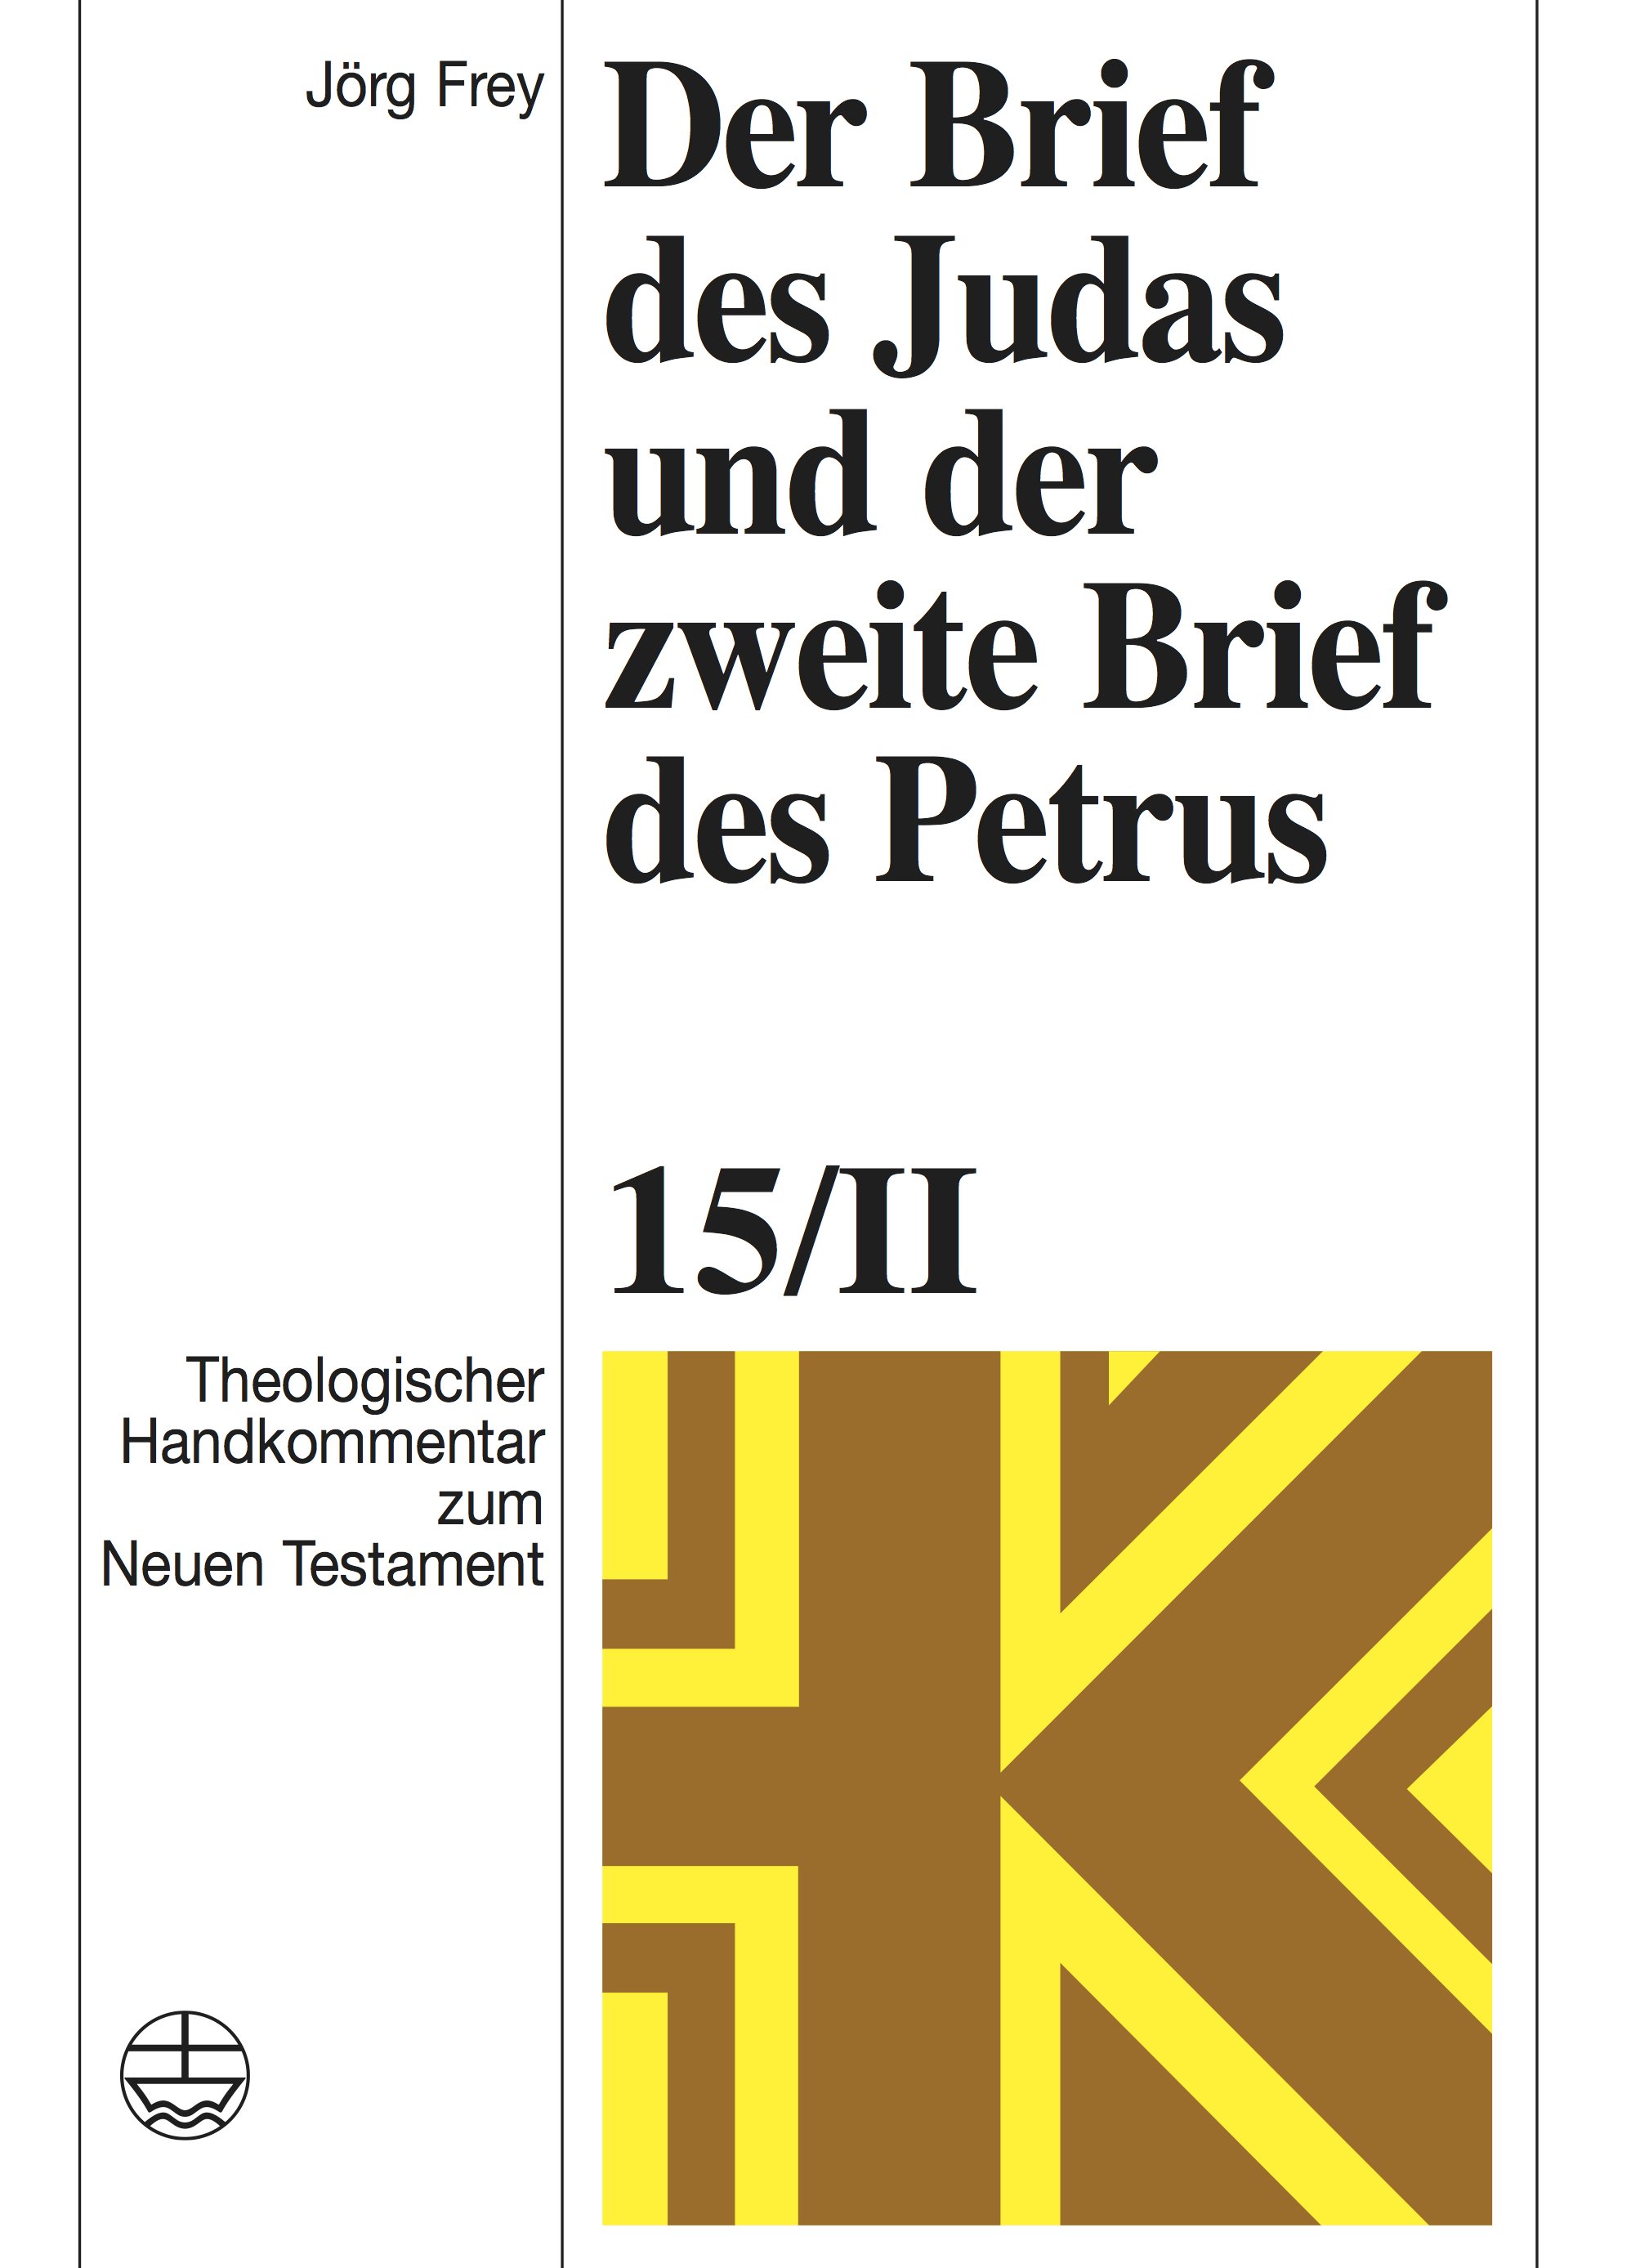 Der Brief des Judas und der zweite Brief des Petrus (ThHK Bd. 15/II) - Cover